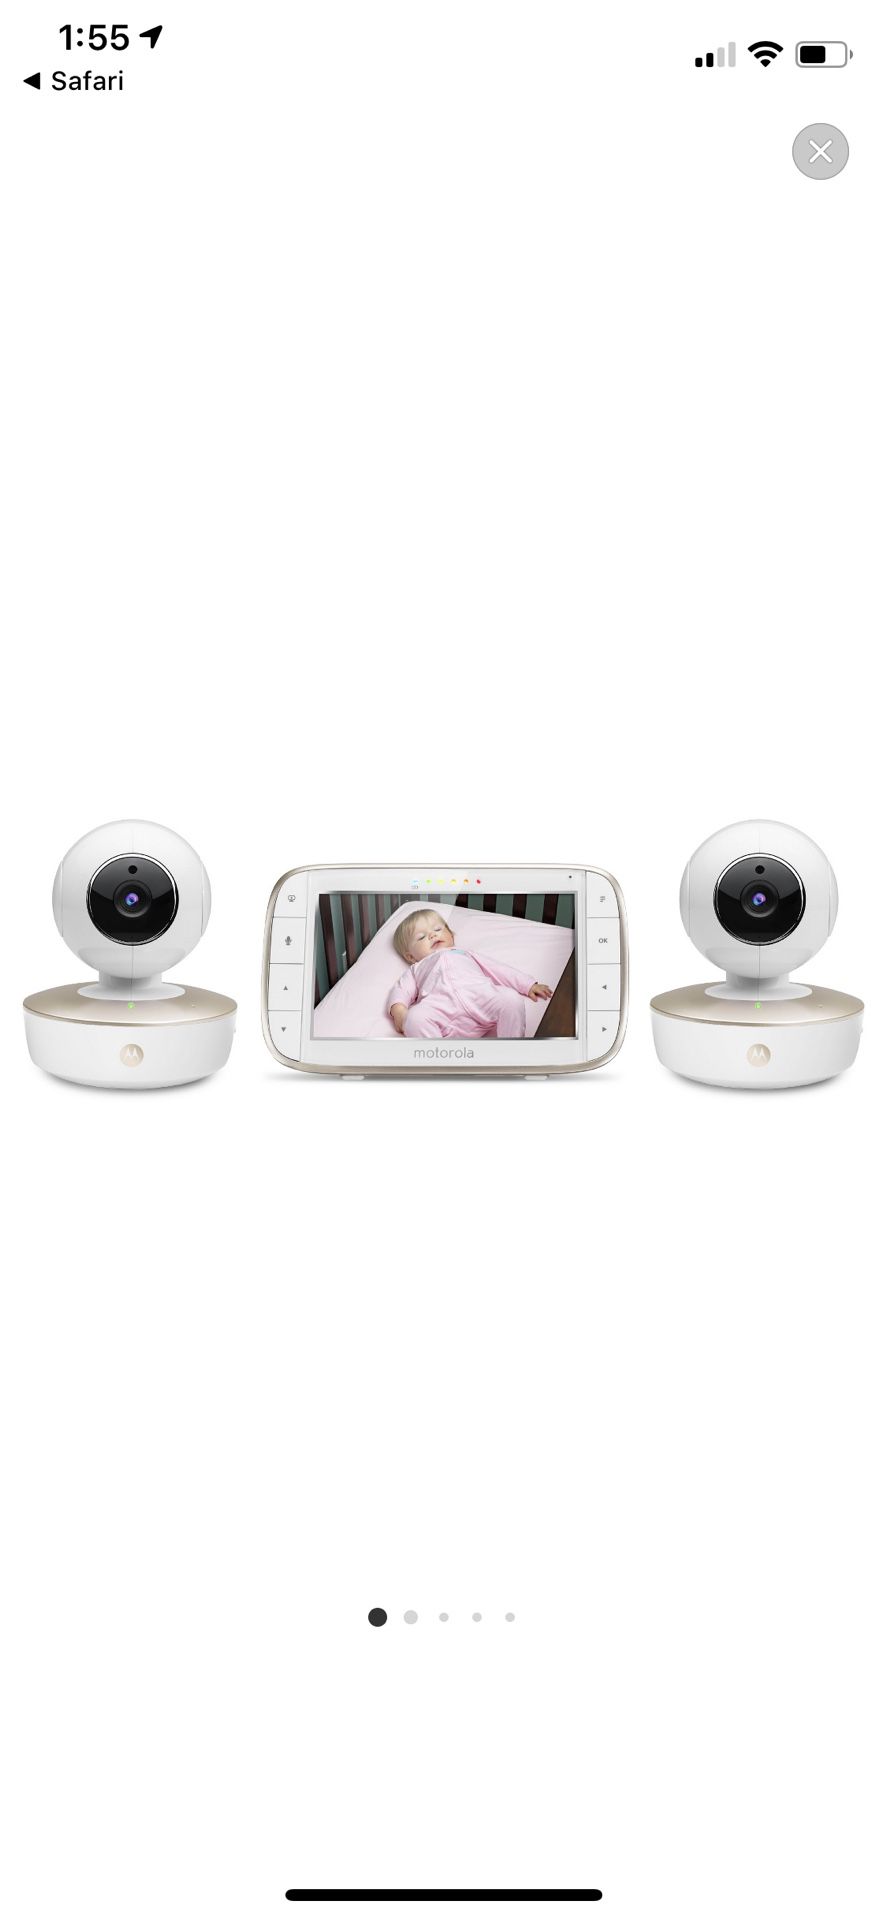 motorola 5” baby monitor 2 cameras